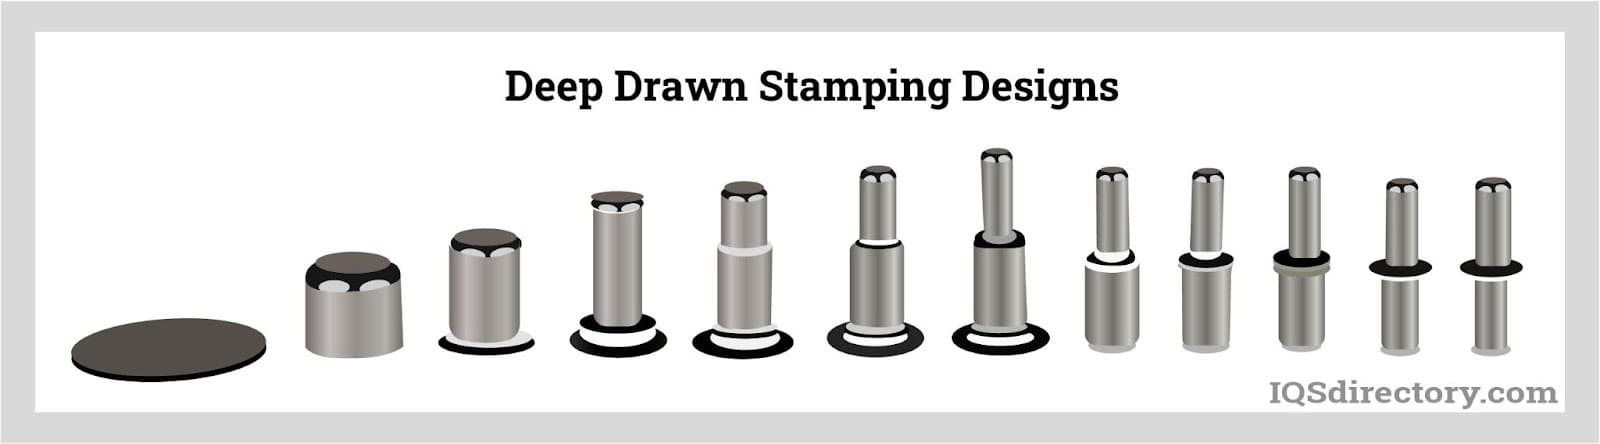 Deep Drawn Stamping Designs